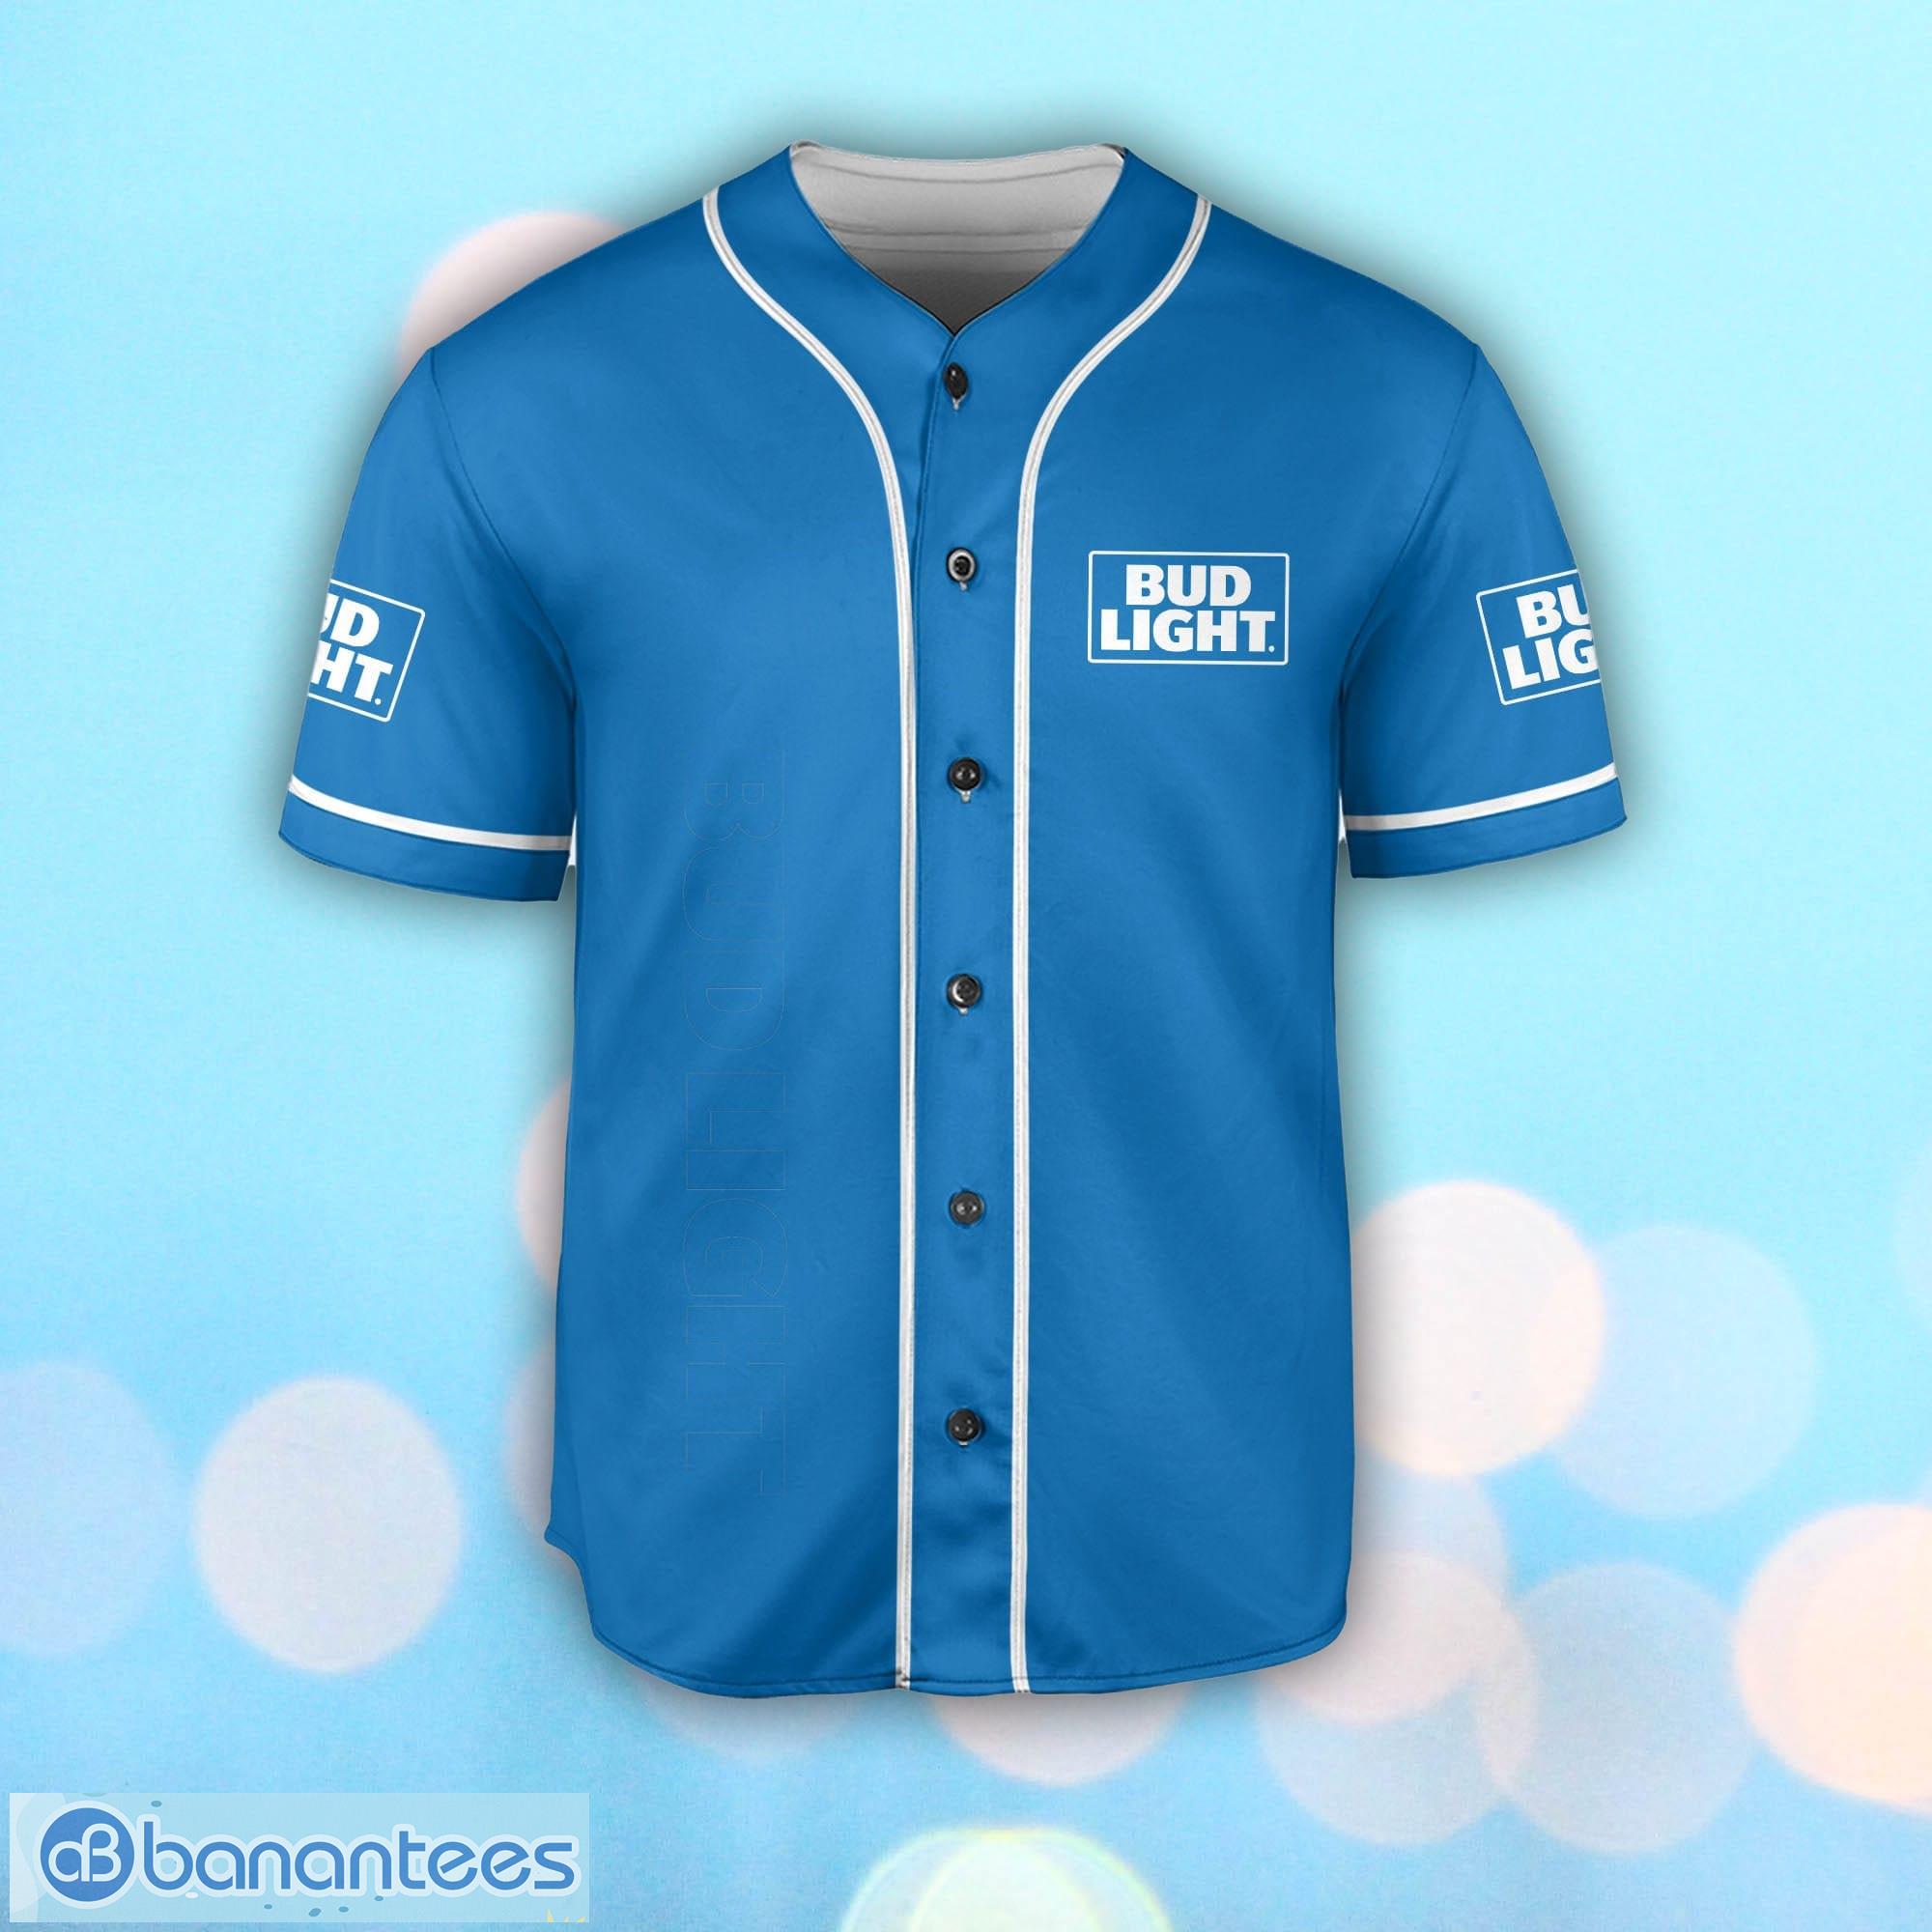 Bud Light Blue Baseball Jersey Shirt, Jersey gift For Men, Baseball Shirt -  Banantees